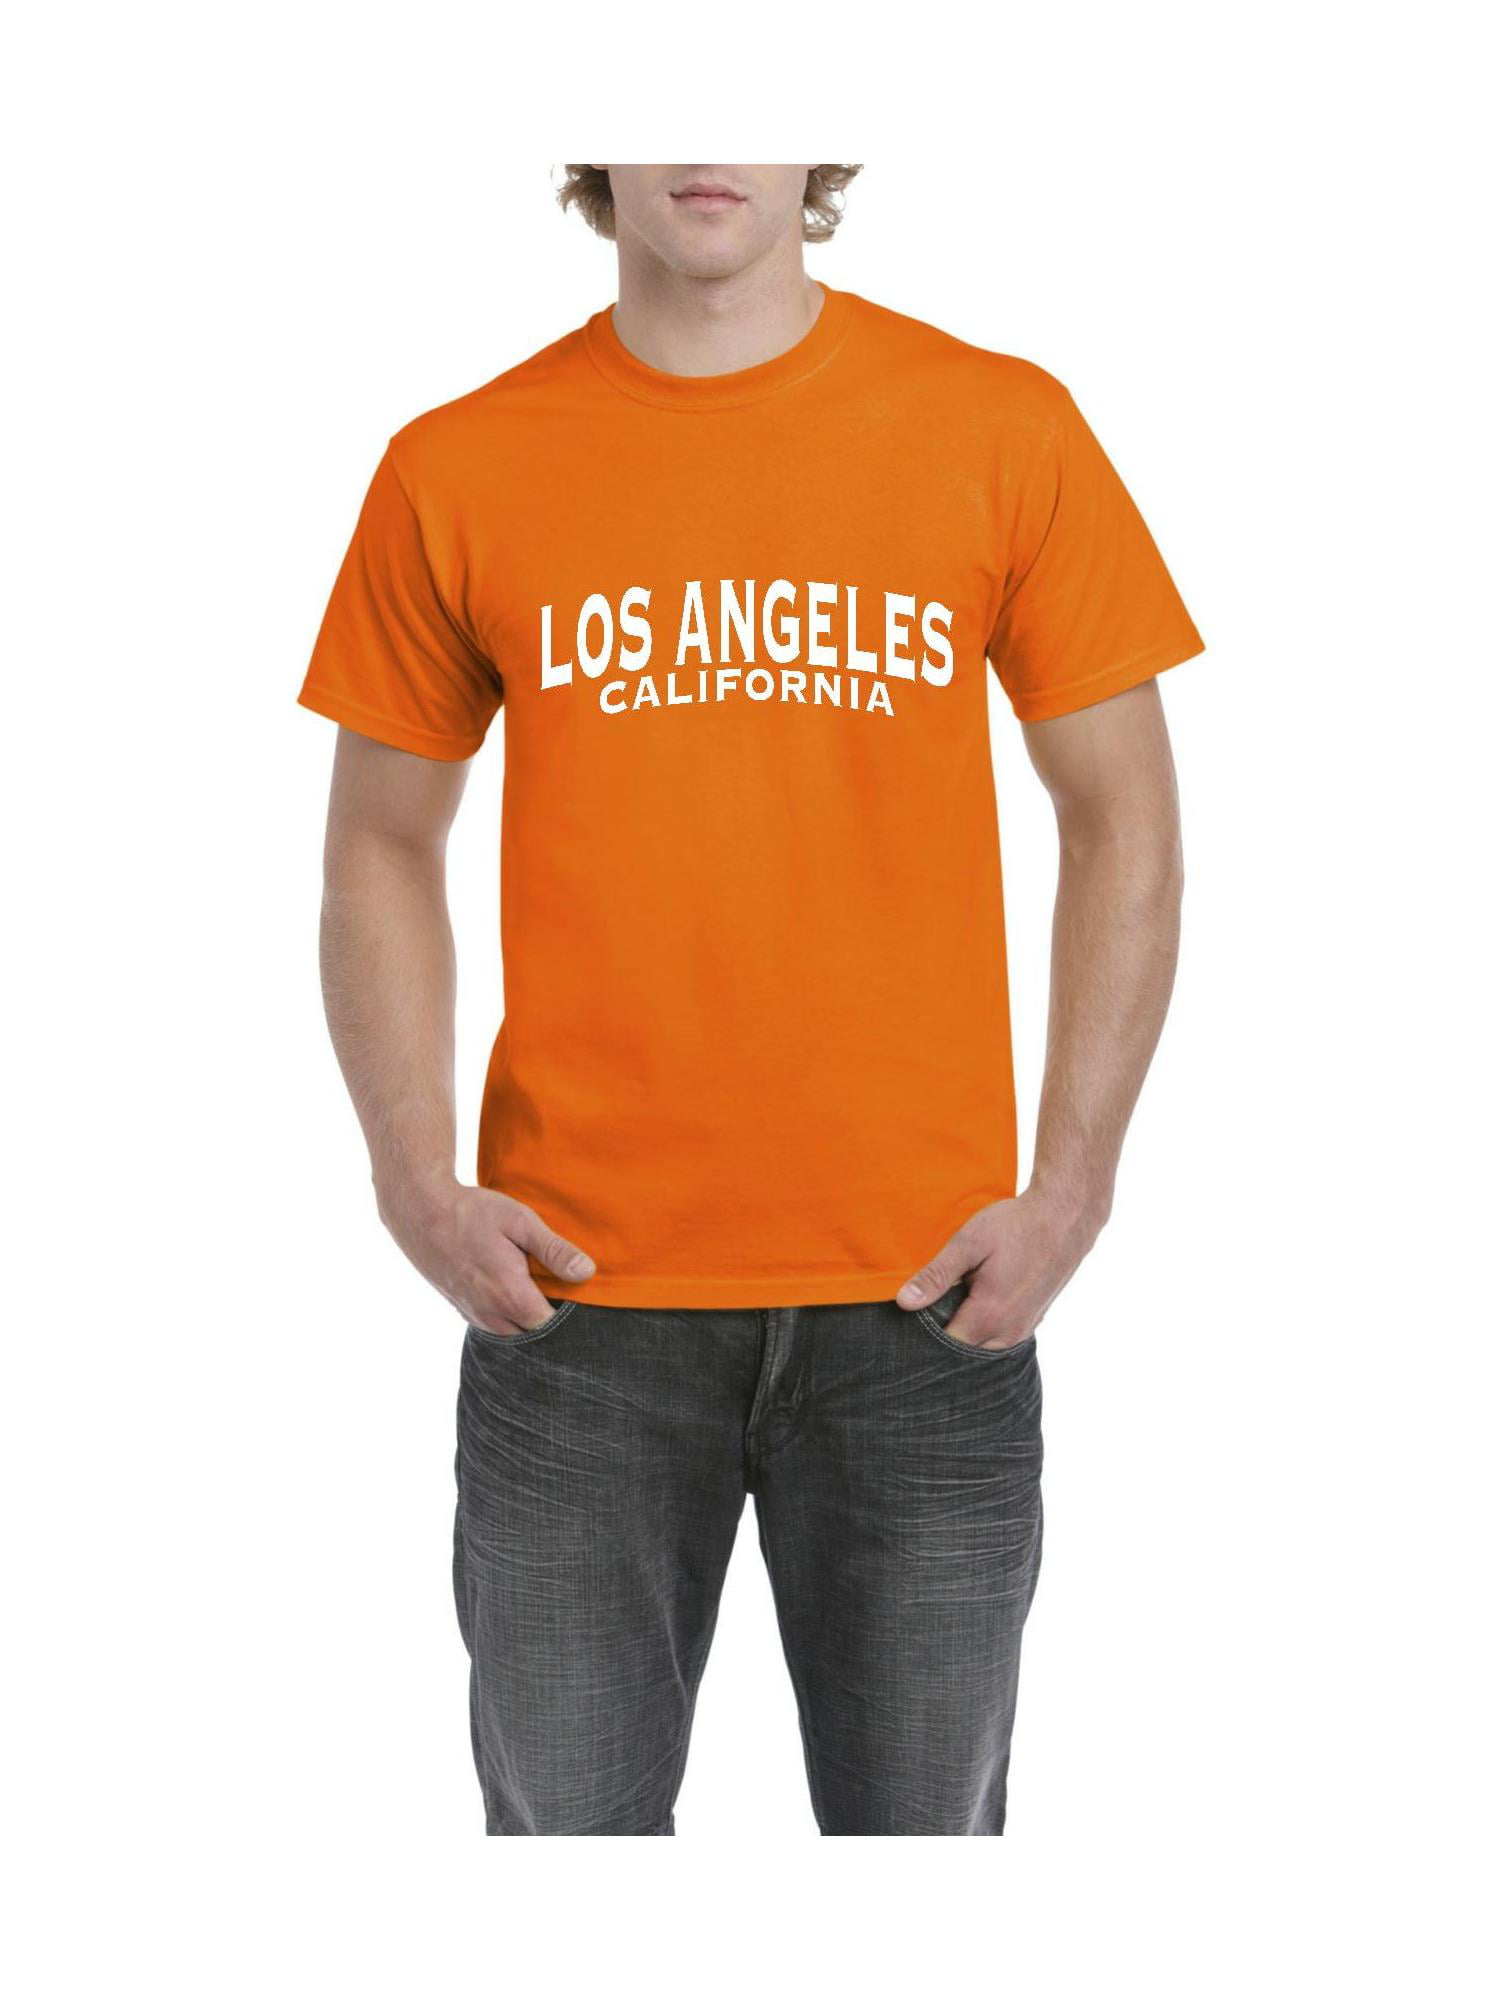 L.A LOS ANGELES CALIFORNIA FASHION SUMMER MEN/'S V-NECK SHORT SLEEVE T-SHIRT